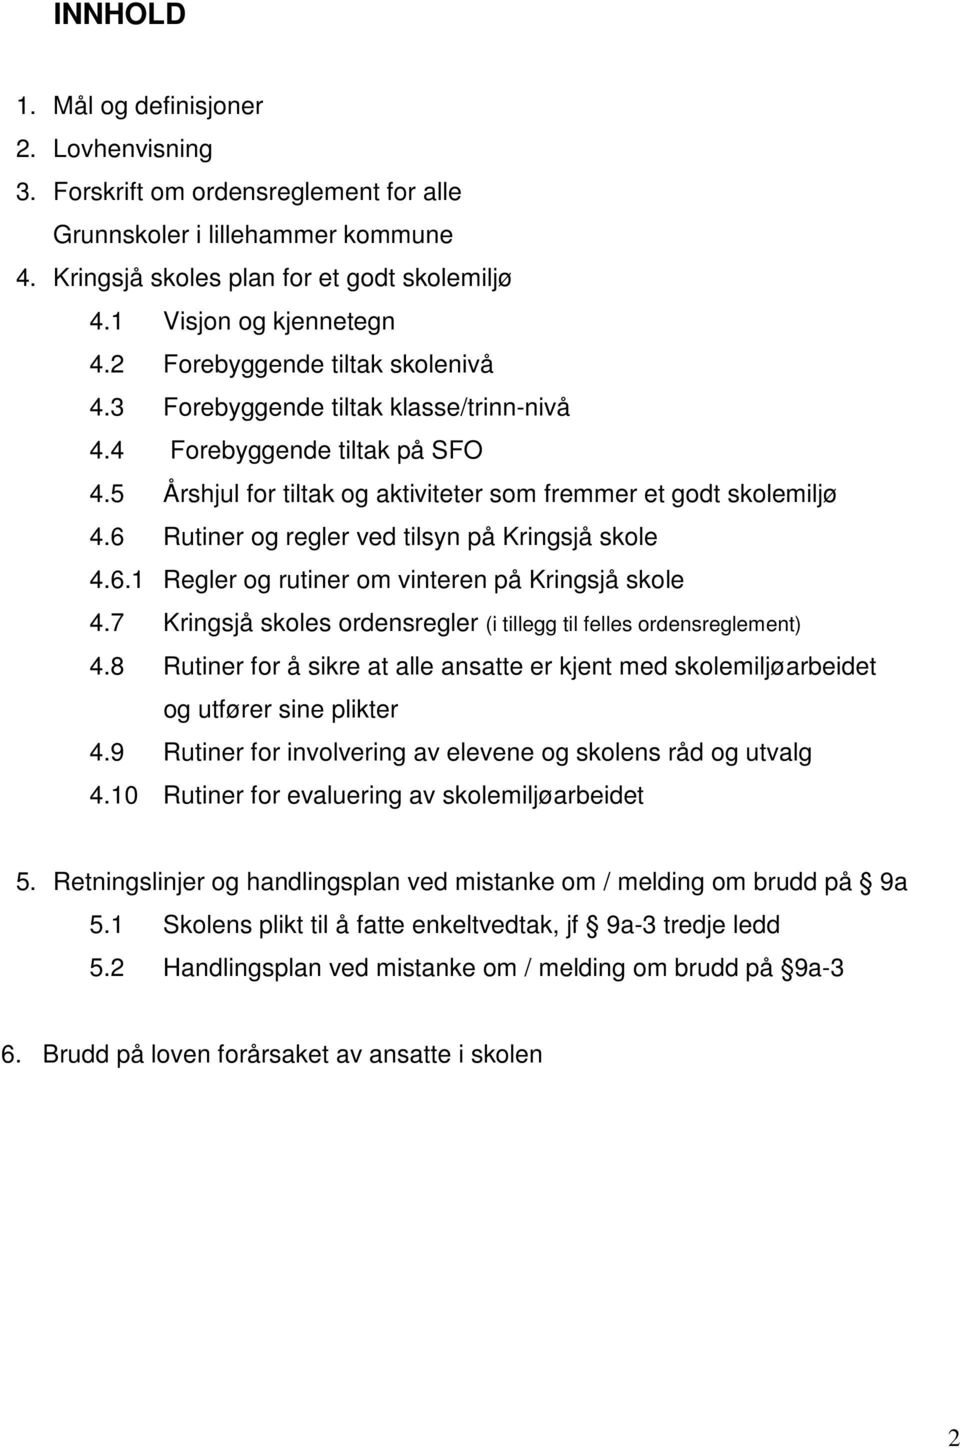 6 Rutiner og regler ved tilsyn på Kringsjå skole 4.6.1 Regler og rutiner om vinteren på Kringsjå skole 4.7 Kringsjå skoles ordensregler (i tillegg til felles ordensreglement) 4.